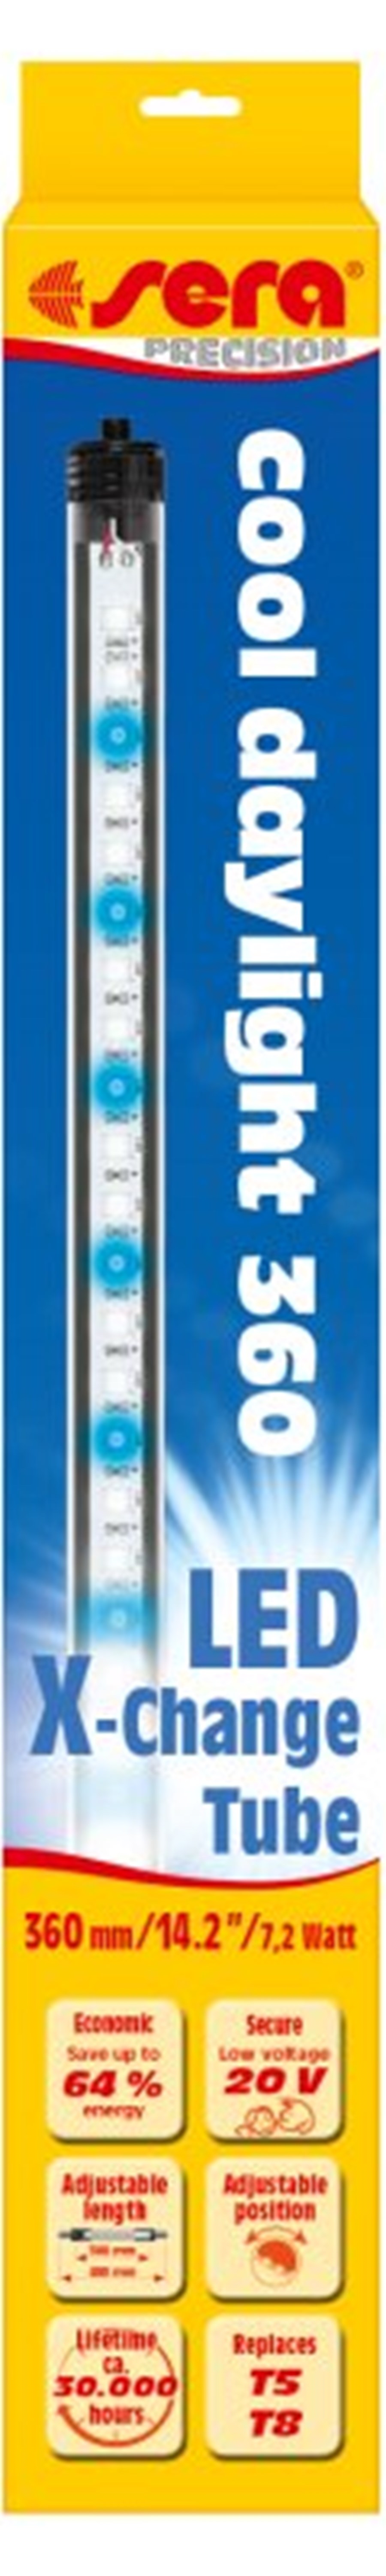 sera LED cool daylight 965 mm / 22 W